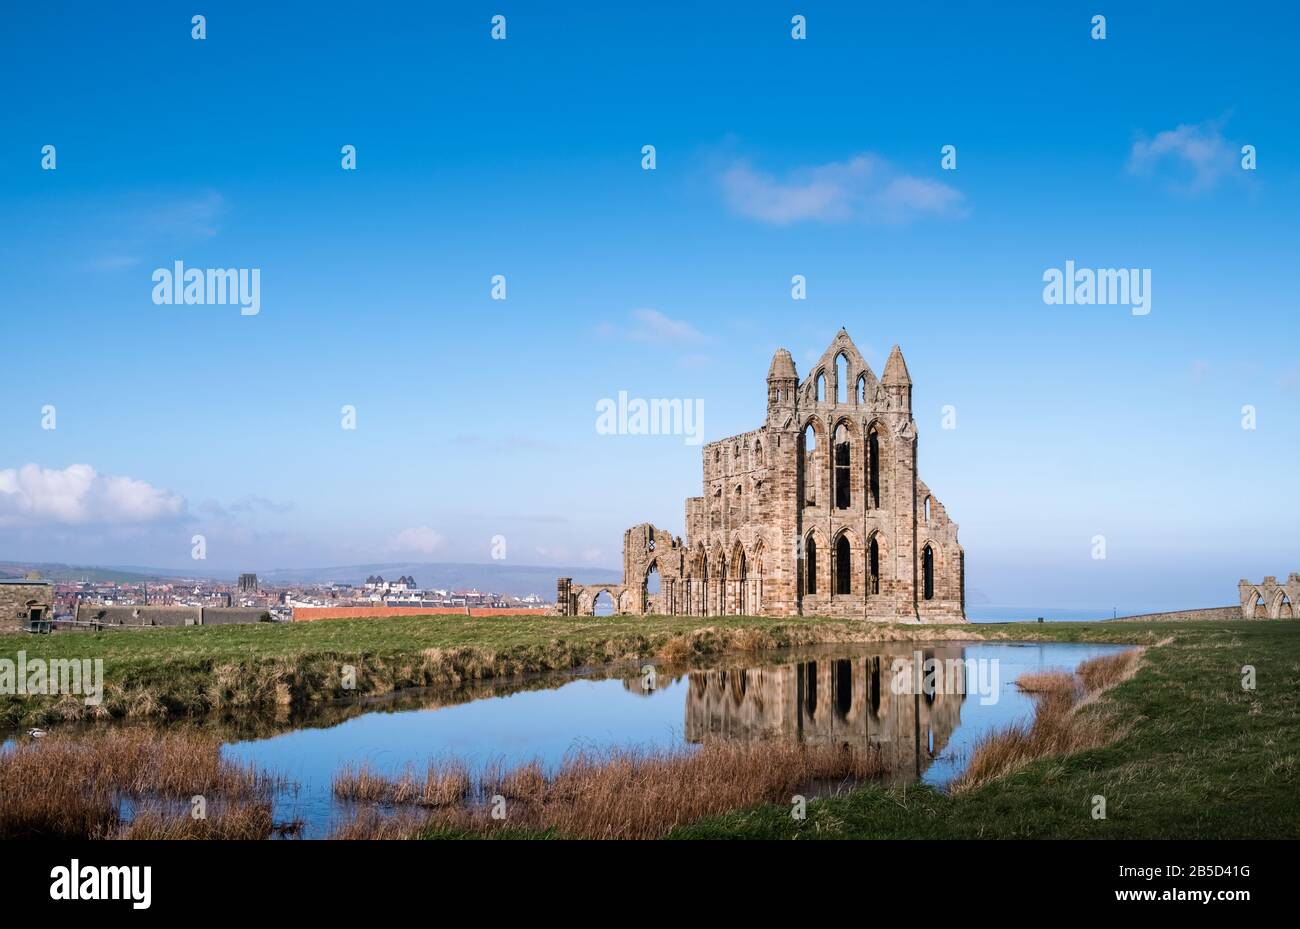 Abbazia di Whitby, le rovine di un'abbazia benedettina del 7th secolo situata sulla costa del North Yorkshire, Regno Unito, e un edificio Storico di grado 1. Foto Stock